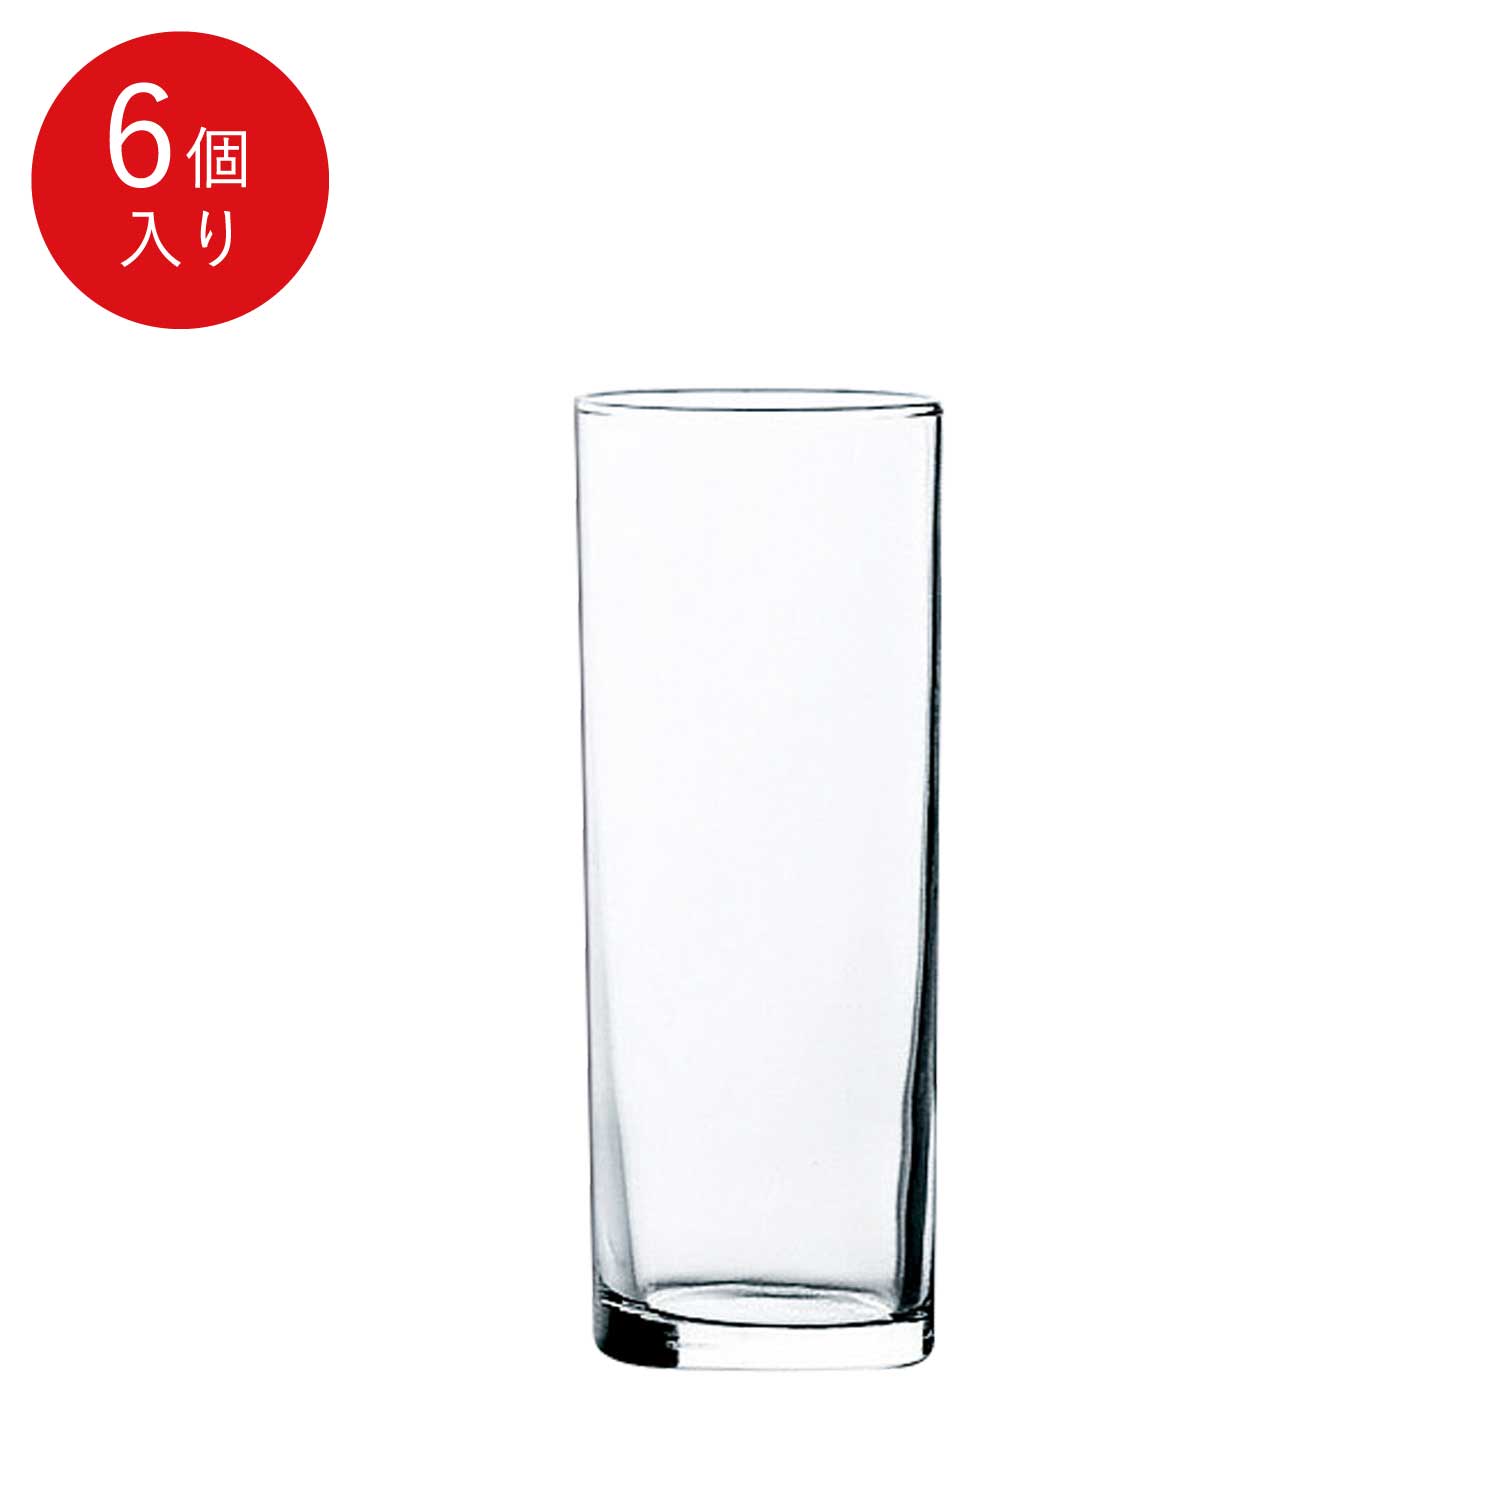 東洋佐々木ガラス <br>レジナ 10オンスタンブラー <br>品番：T-21102HS-E107 <br>glass ウイスキー 水割り グラス <br>日本製 <br>ワイン(750ml)11本まで同梱可 <br>包装不可